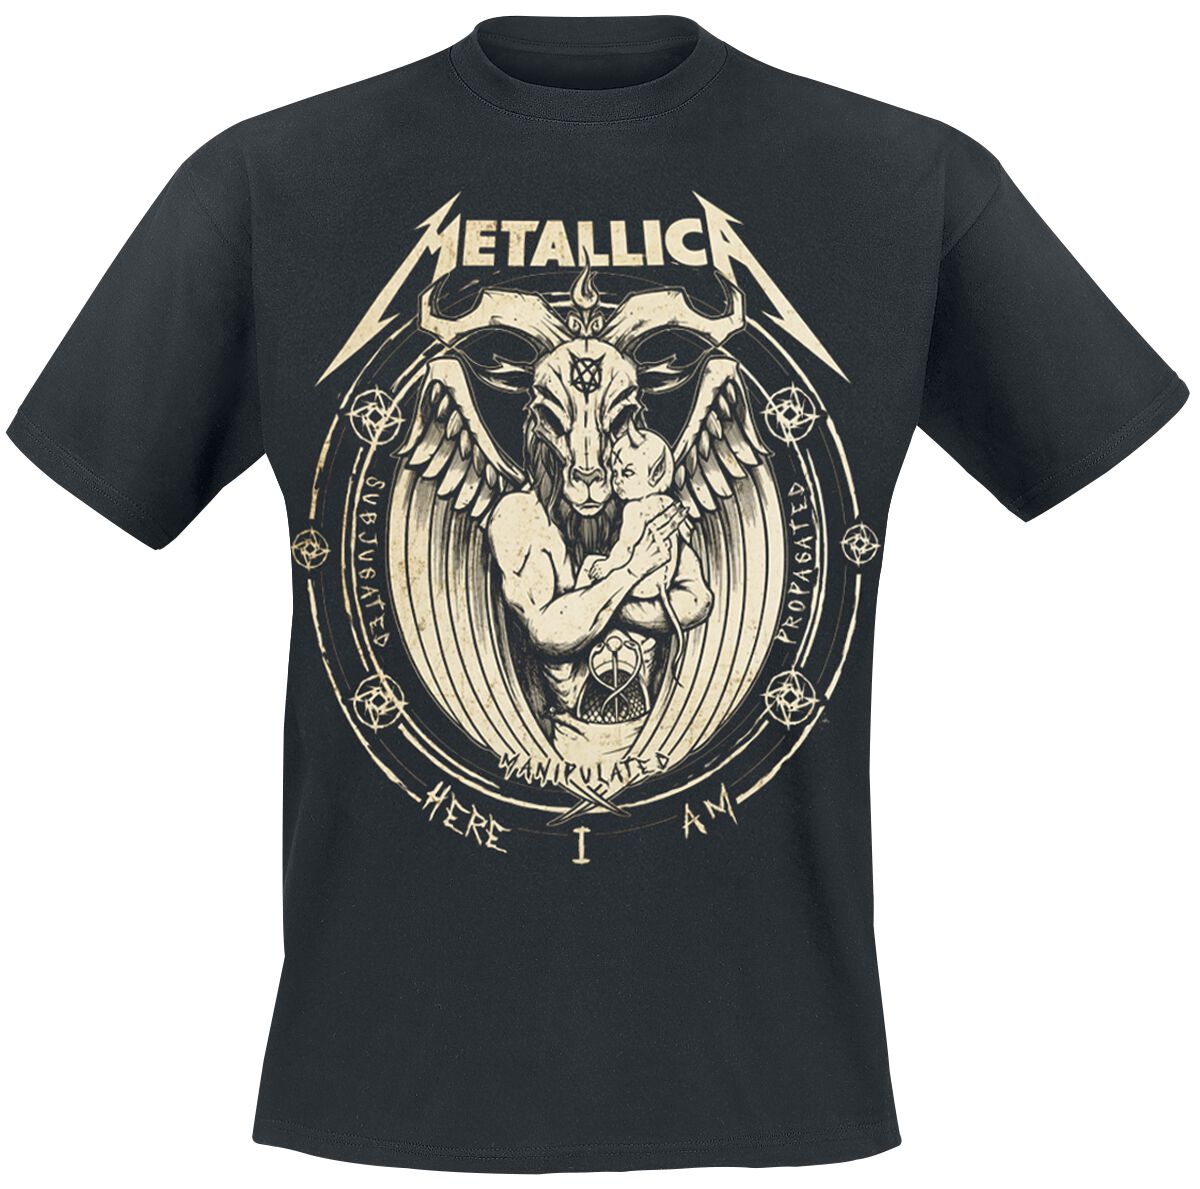 Metallica T-Shirt - Darkness Son - S bis 5XL - für Männer - Größe 3XL - schwarz  - Lizenziertes Merchandise!